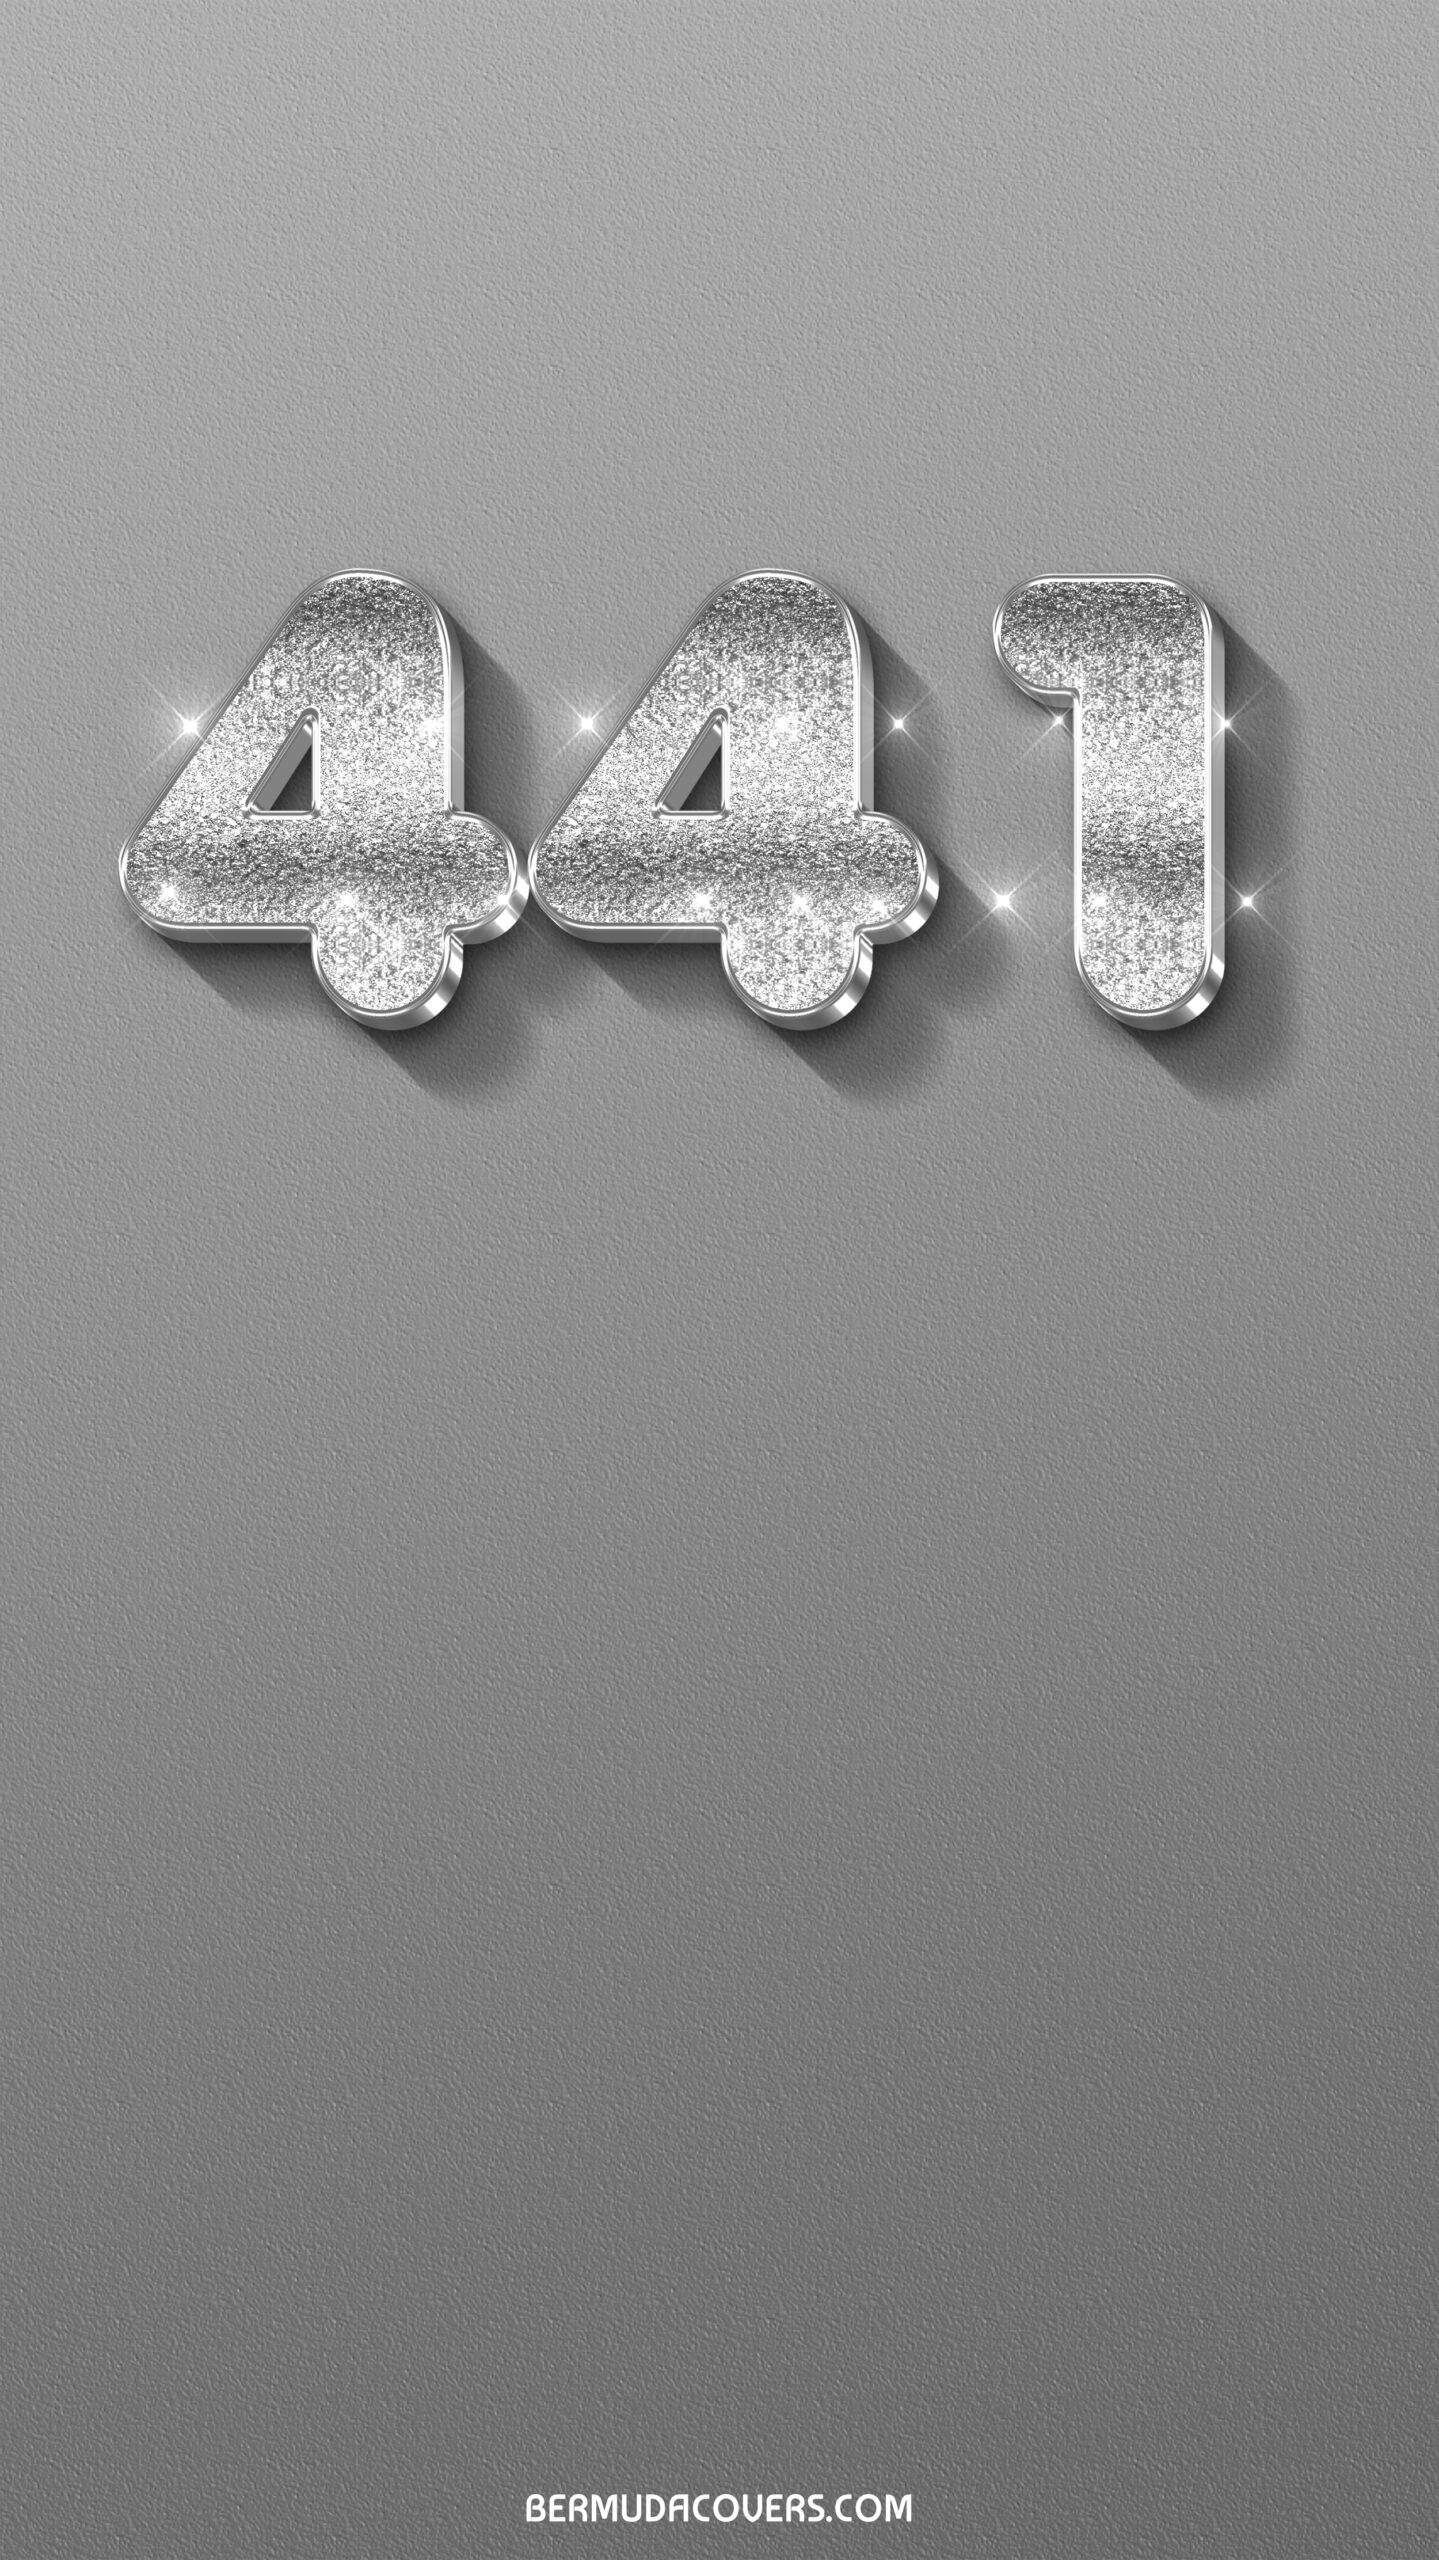 441 sparkle text effect 3d silver 36 Phone Wallpaper GJ4jAxpw